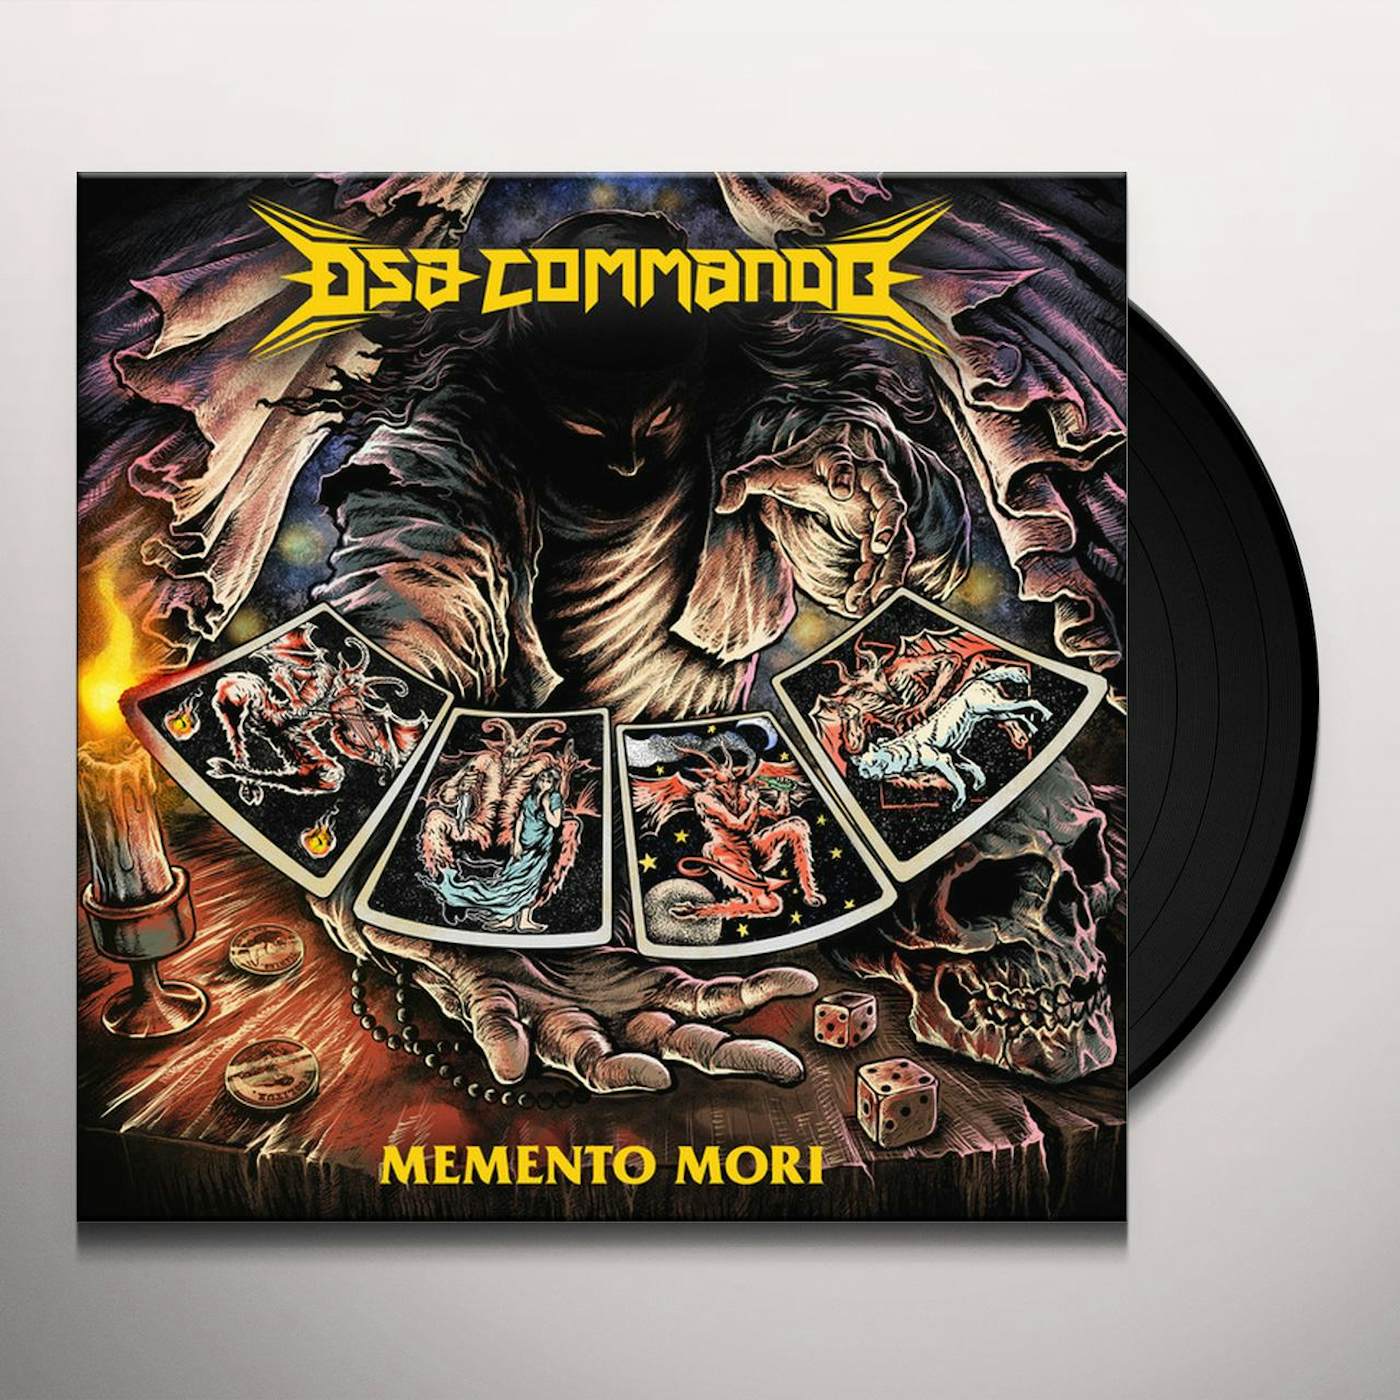 Dsa Commando Memento Mori Vinyl Record